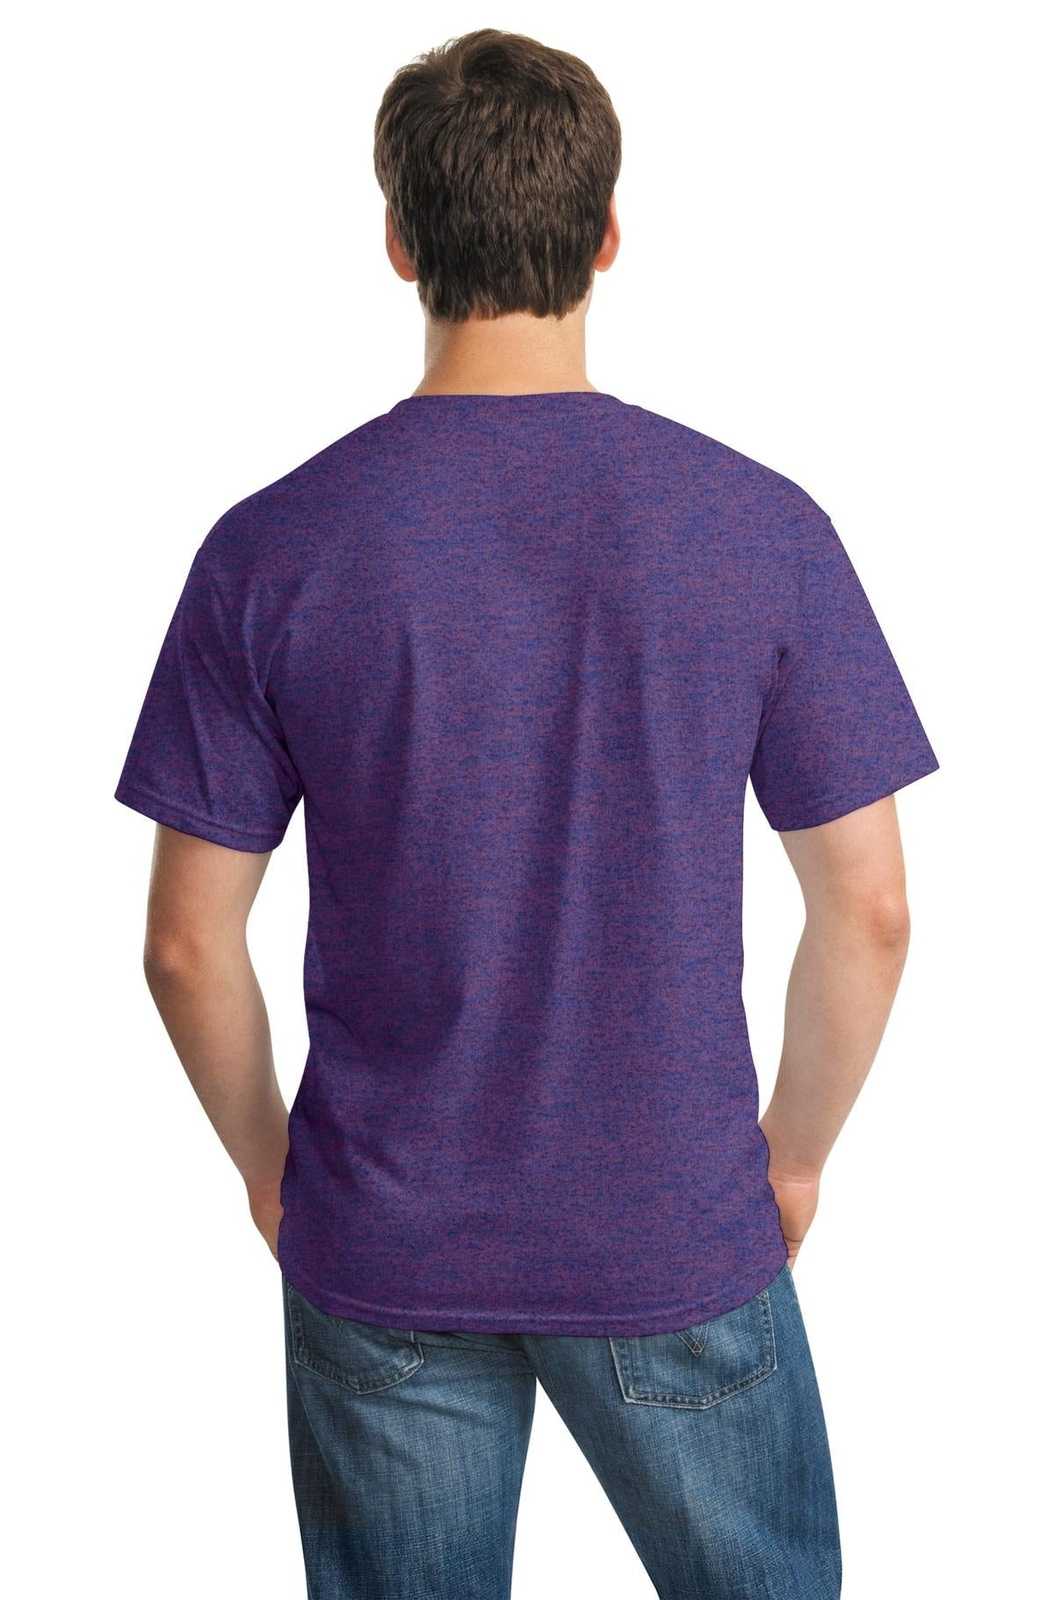 Gildan 5000 Heavy Cotton 100% Cotton T-Shirt - Lilac - HIT a Double